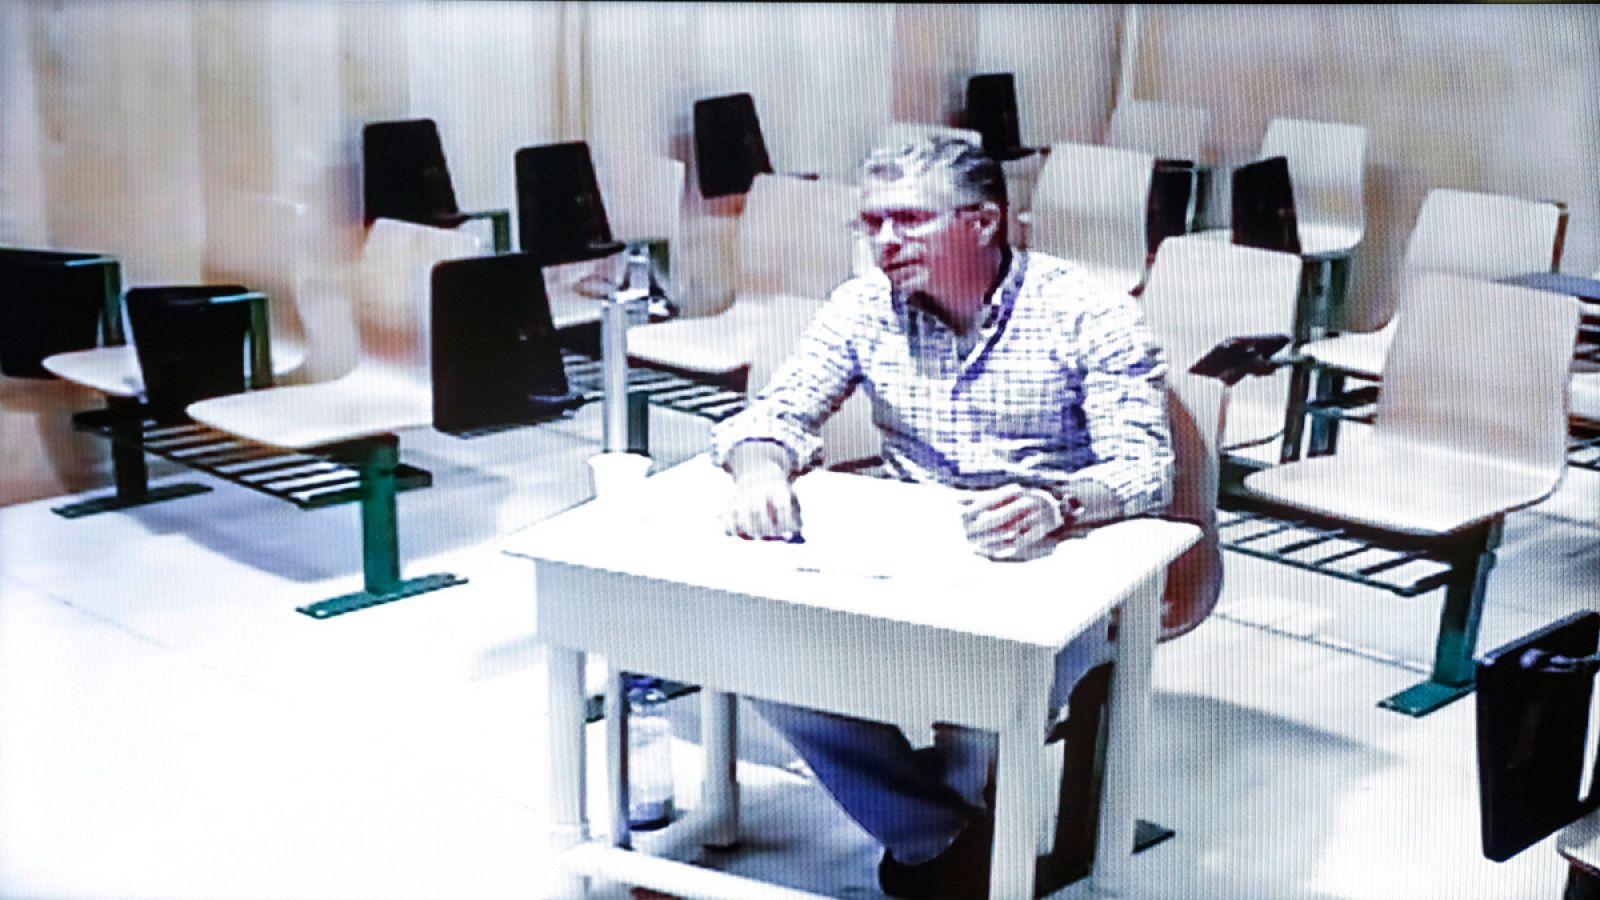 El exconsejero Francisco Granados, compareciendo por videoconferencia desde la cárcel de Estremera en la comisión de la Asamblea de Madrid que investiga la corrupción